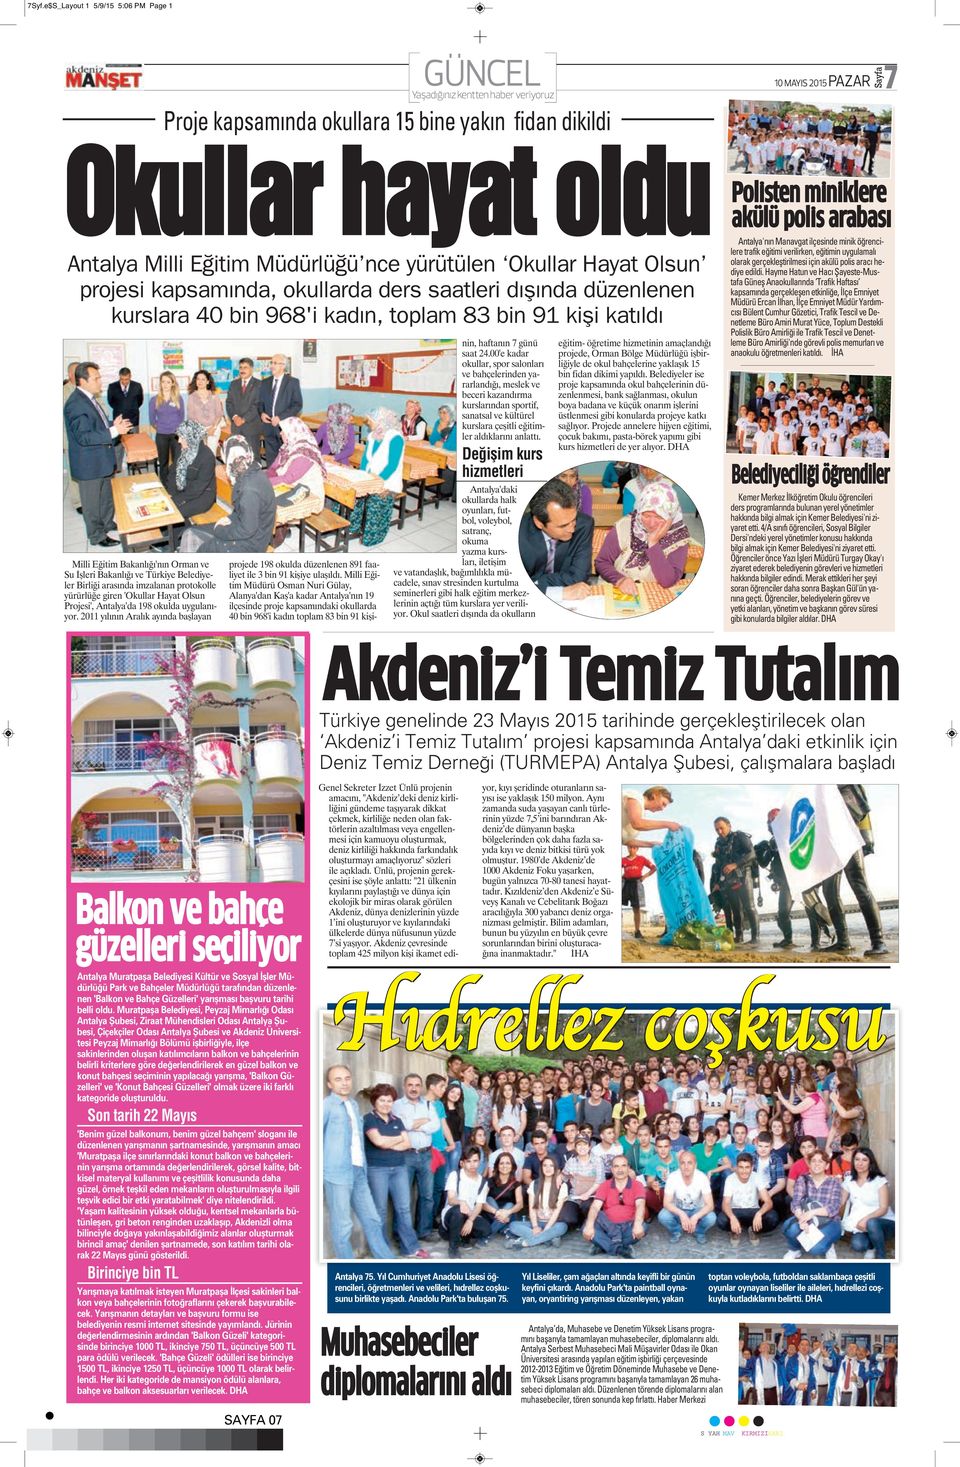 2011 yılının Aralık ayında başlayan GÜNCEL Proje kapsamında okullara 15 bine yakın fidan dikildi Okullar hayat oldu Antalya Milli Eğitim Müdürlüğü nce yürütülen Okullar Hayat Olsun projesi